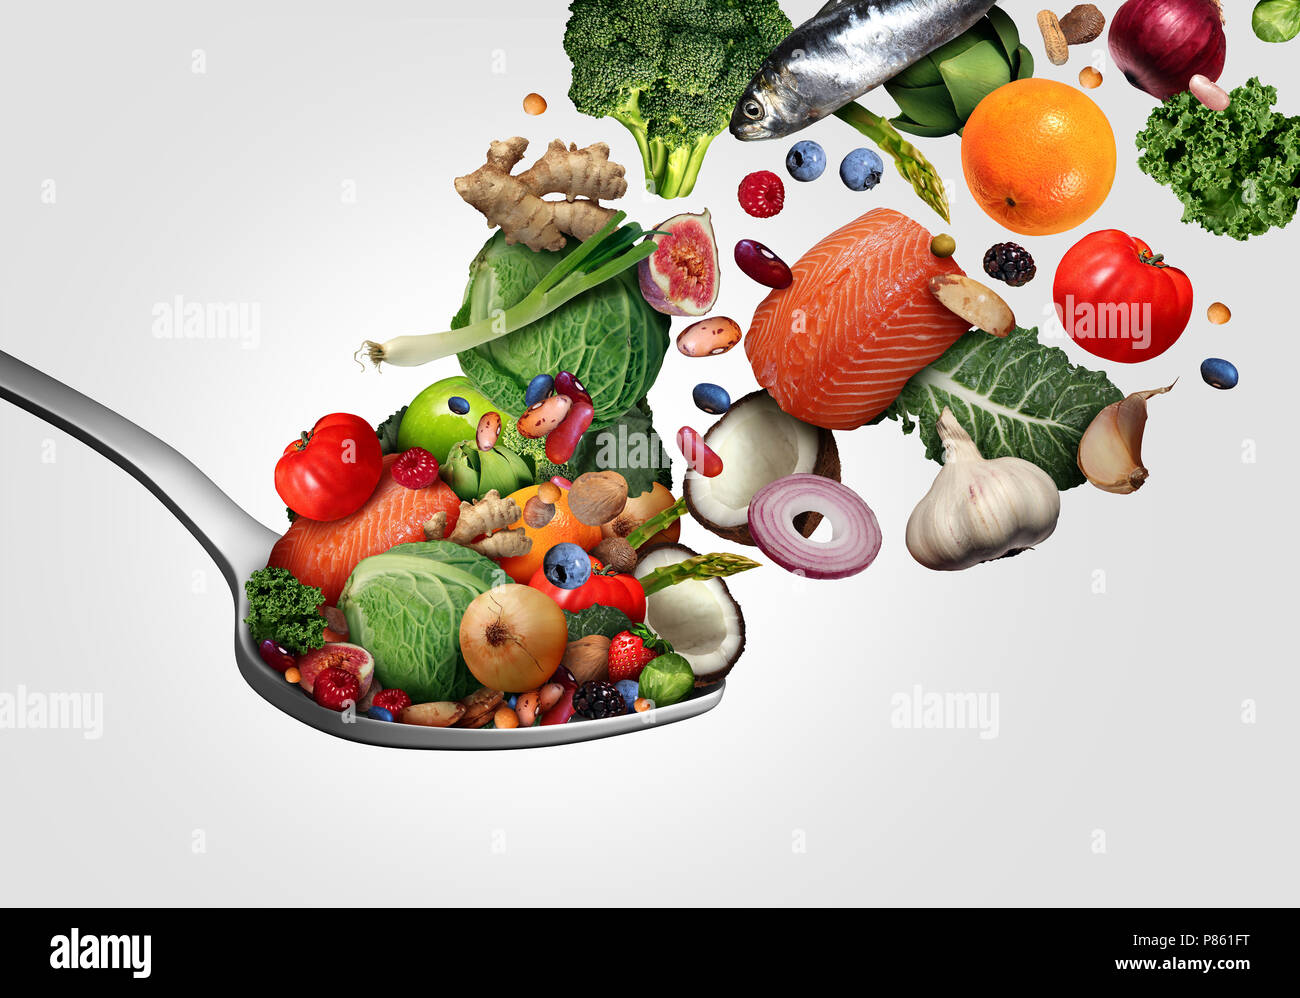 Gesunde Lebensmittel essen, dass für das Herz gut ist wie Obst Gemüse Fisch und Beere mit nahrhaften Muttern auf einem Löffel so gut für Herz Health Ingredients Stockfoto